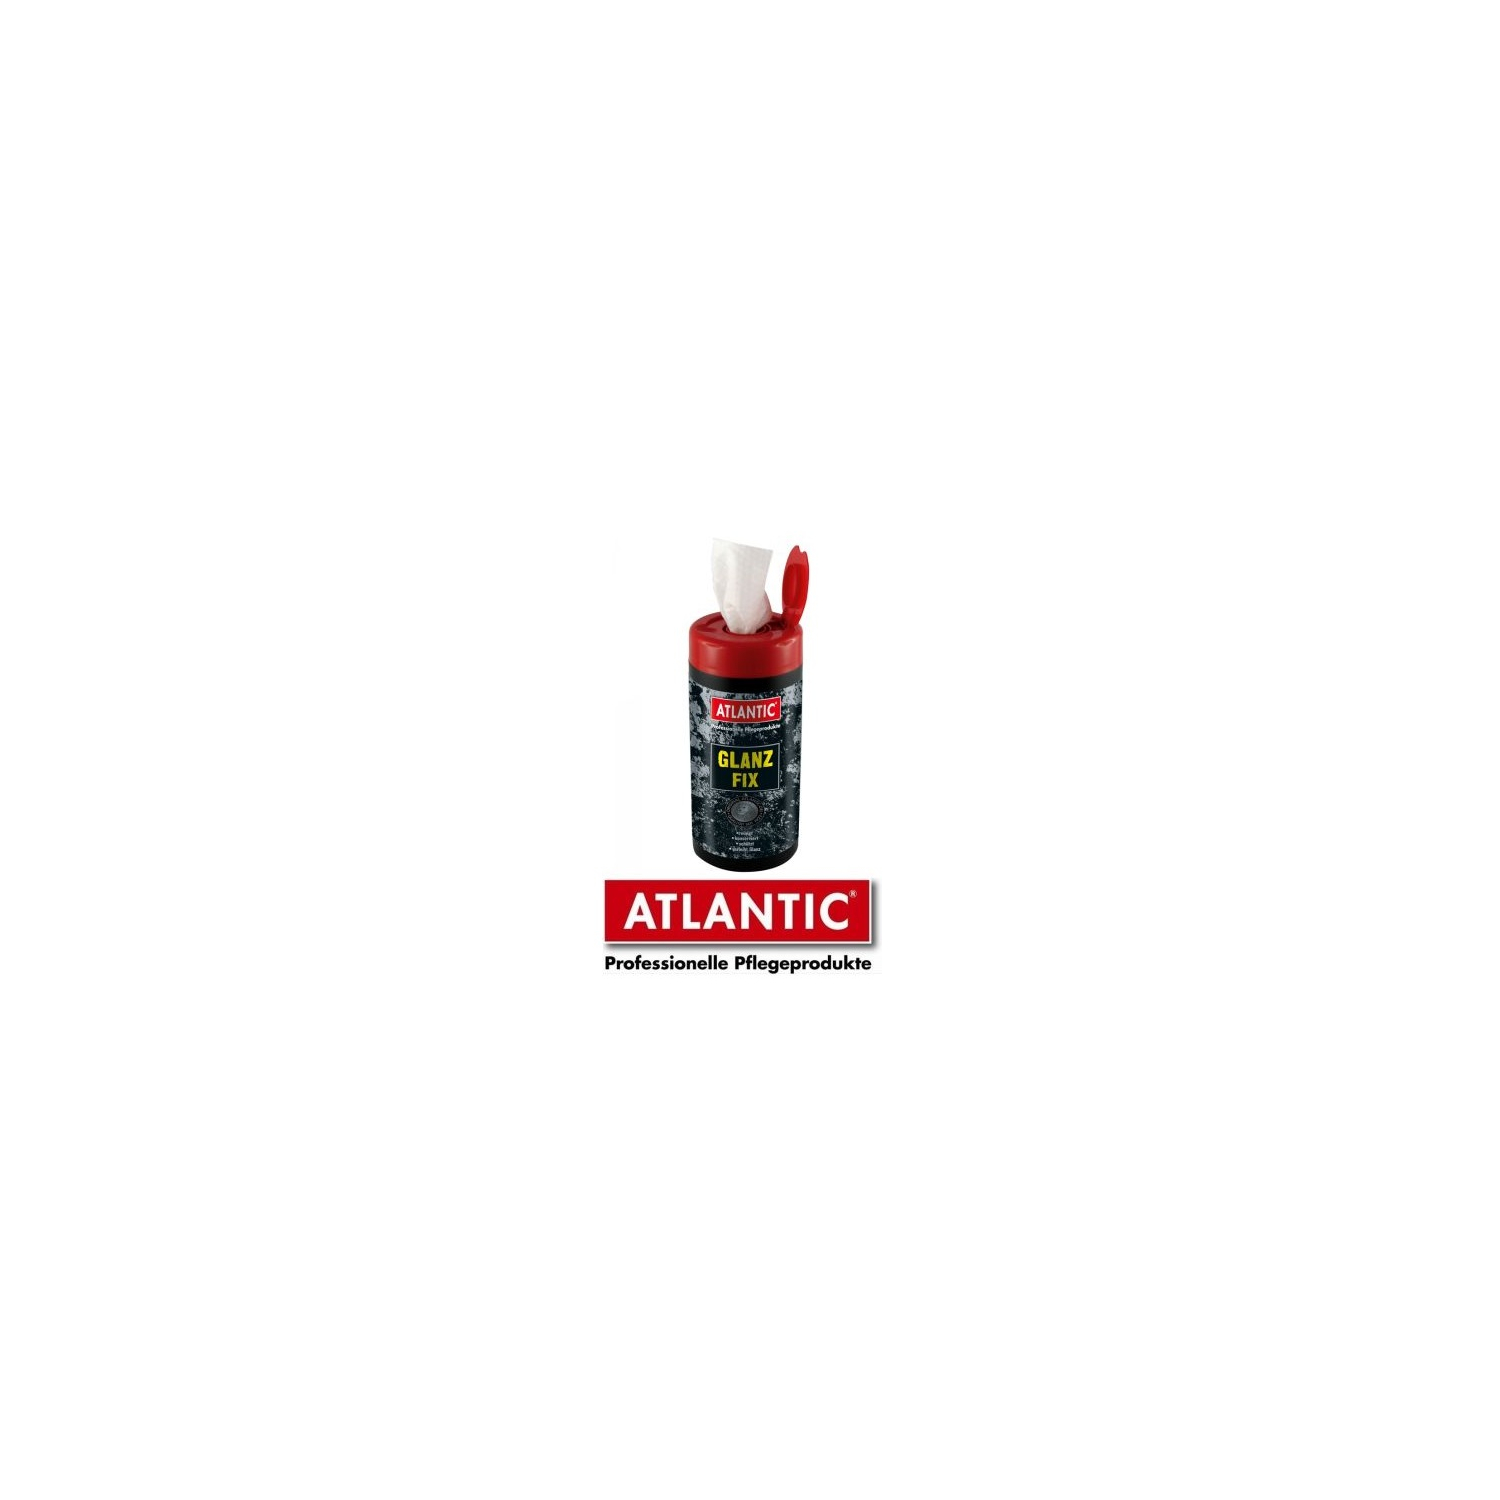 Atlantic Glanz-Fix Tücher 4388 20 Stück in Dose